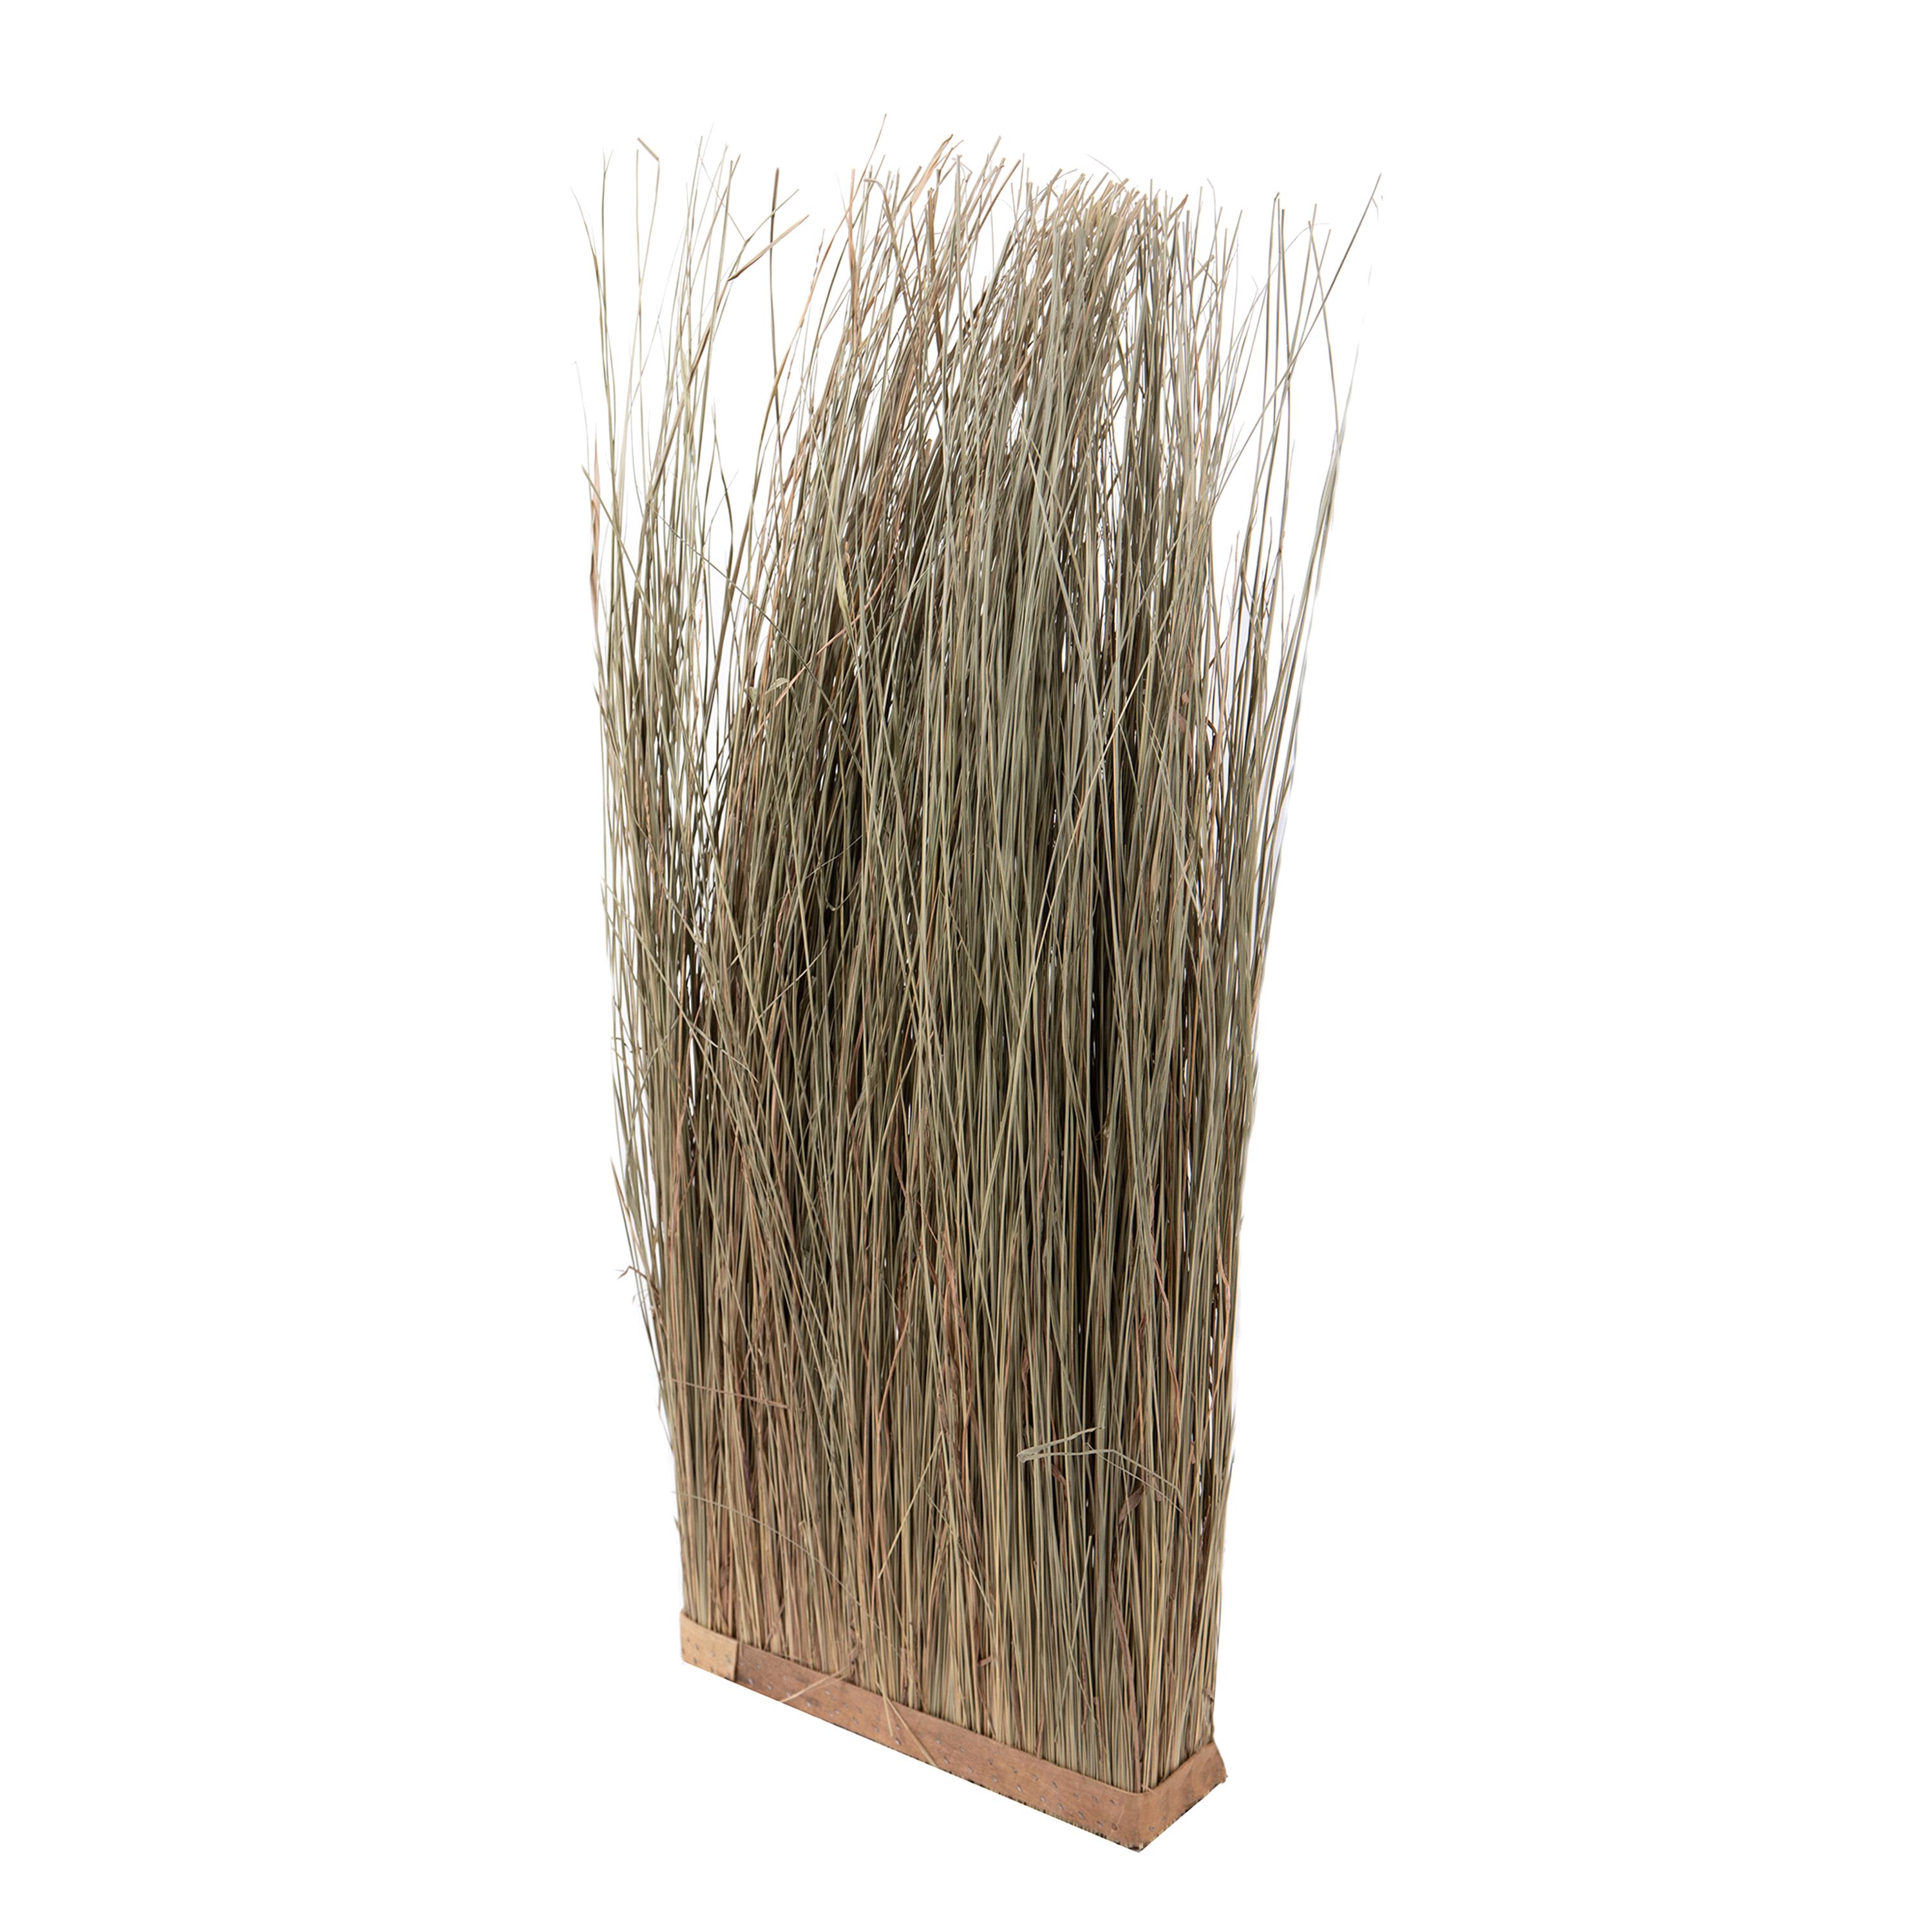 Trockenblumen, Bambus,Manzanit, Bänder und natürliche Strukturen, PARETE ERBA 38XH100 CM